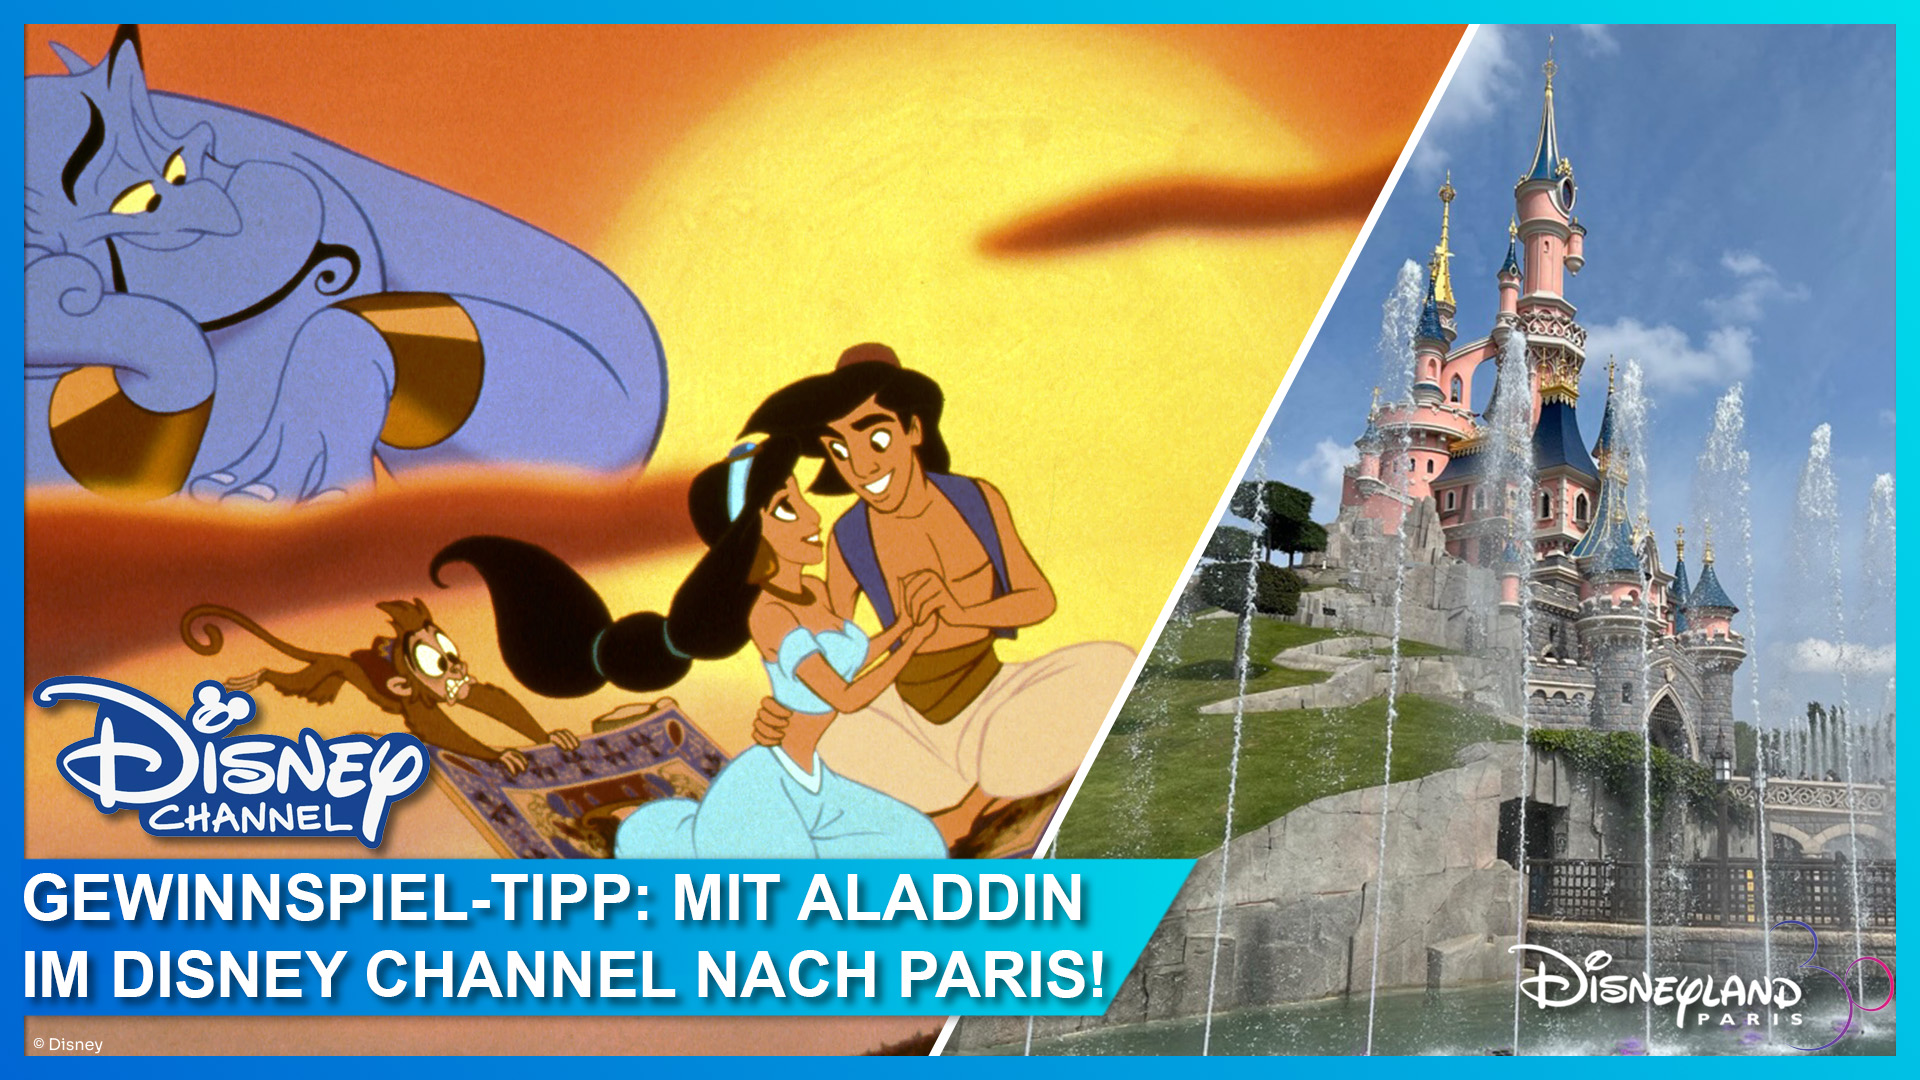 Mit dem Aladdin Gewinnspiel im Disney Channel eine Reise nach Disneyland Paris gewinnen